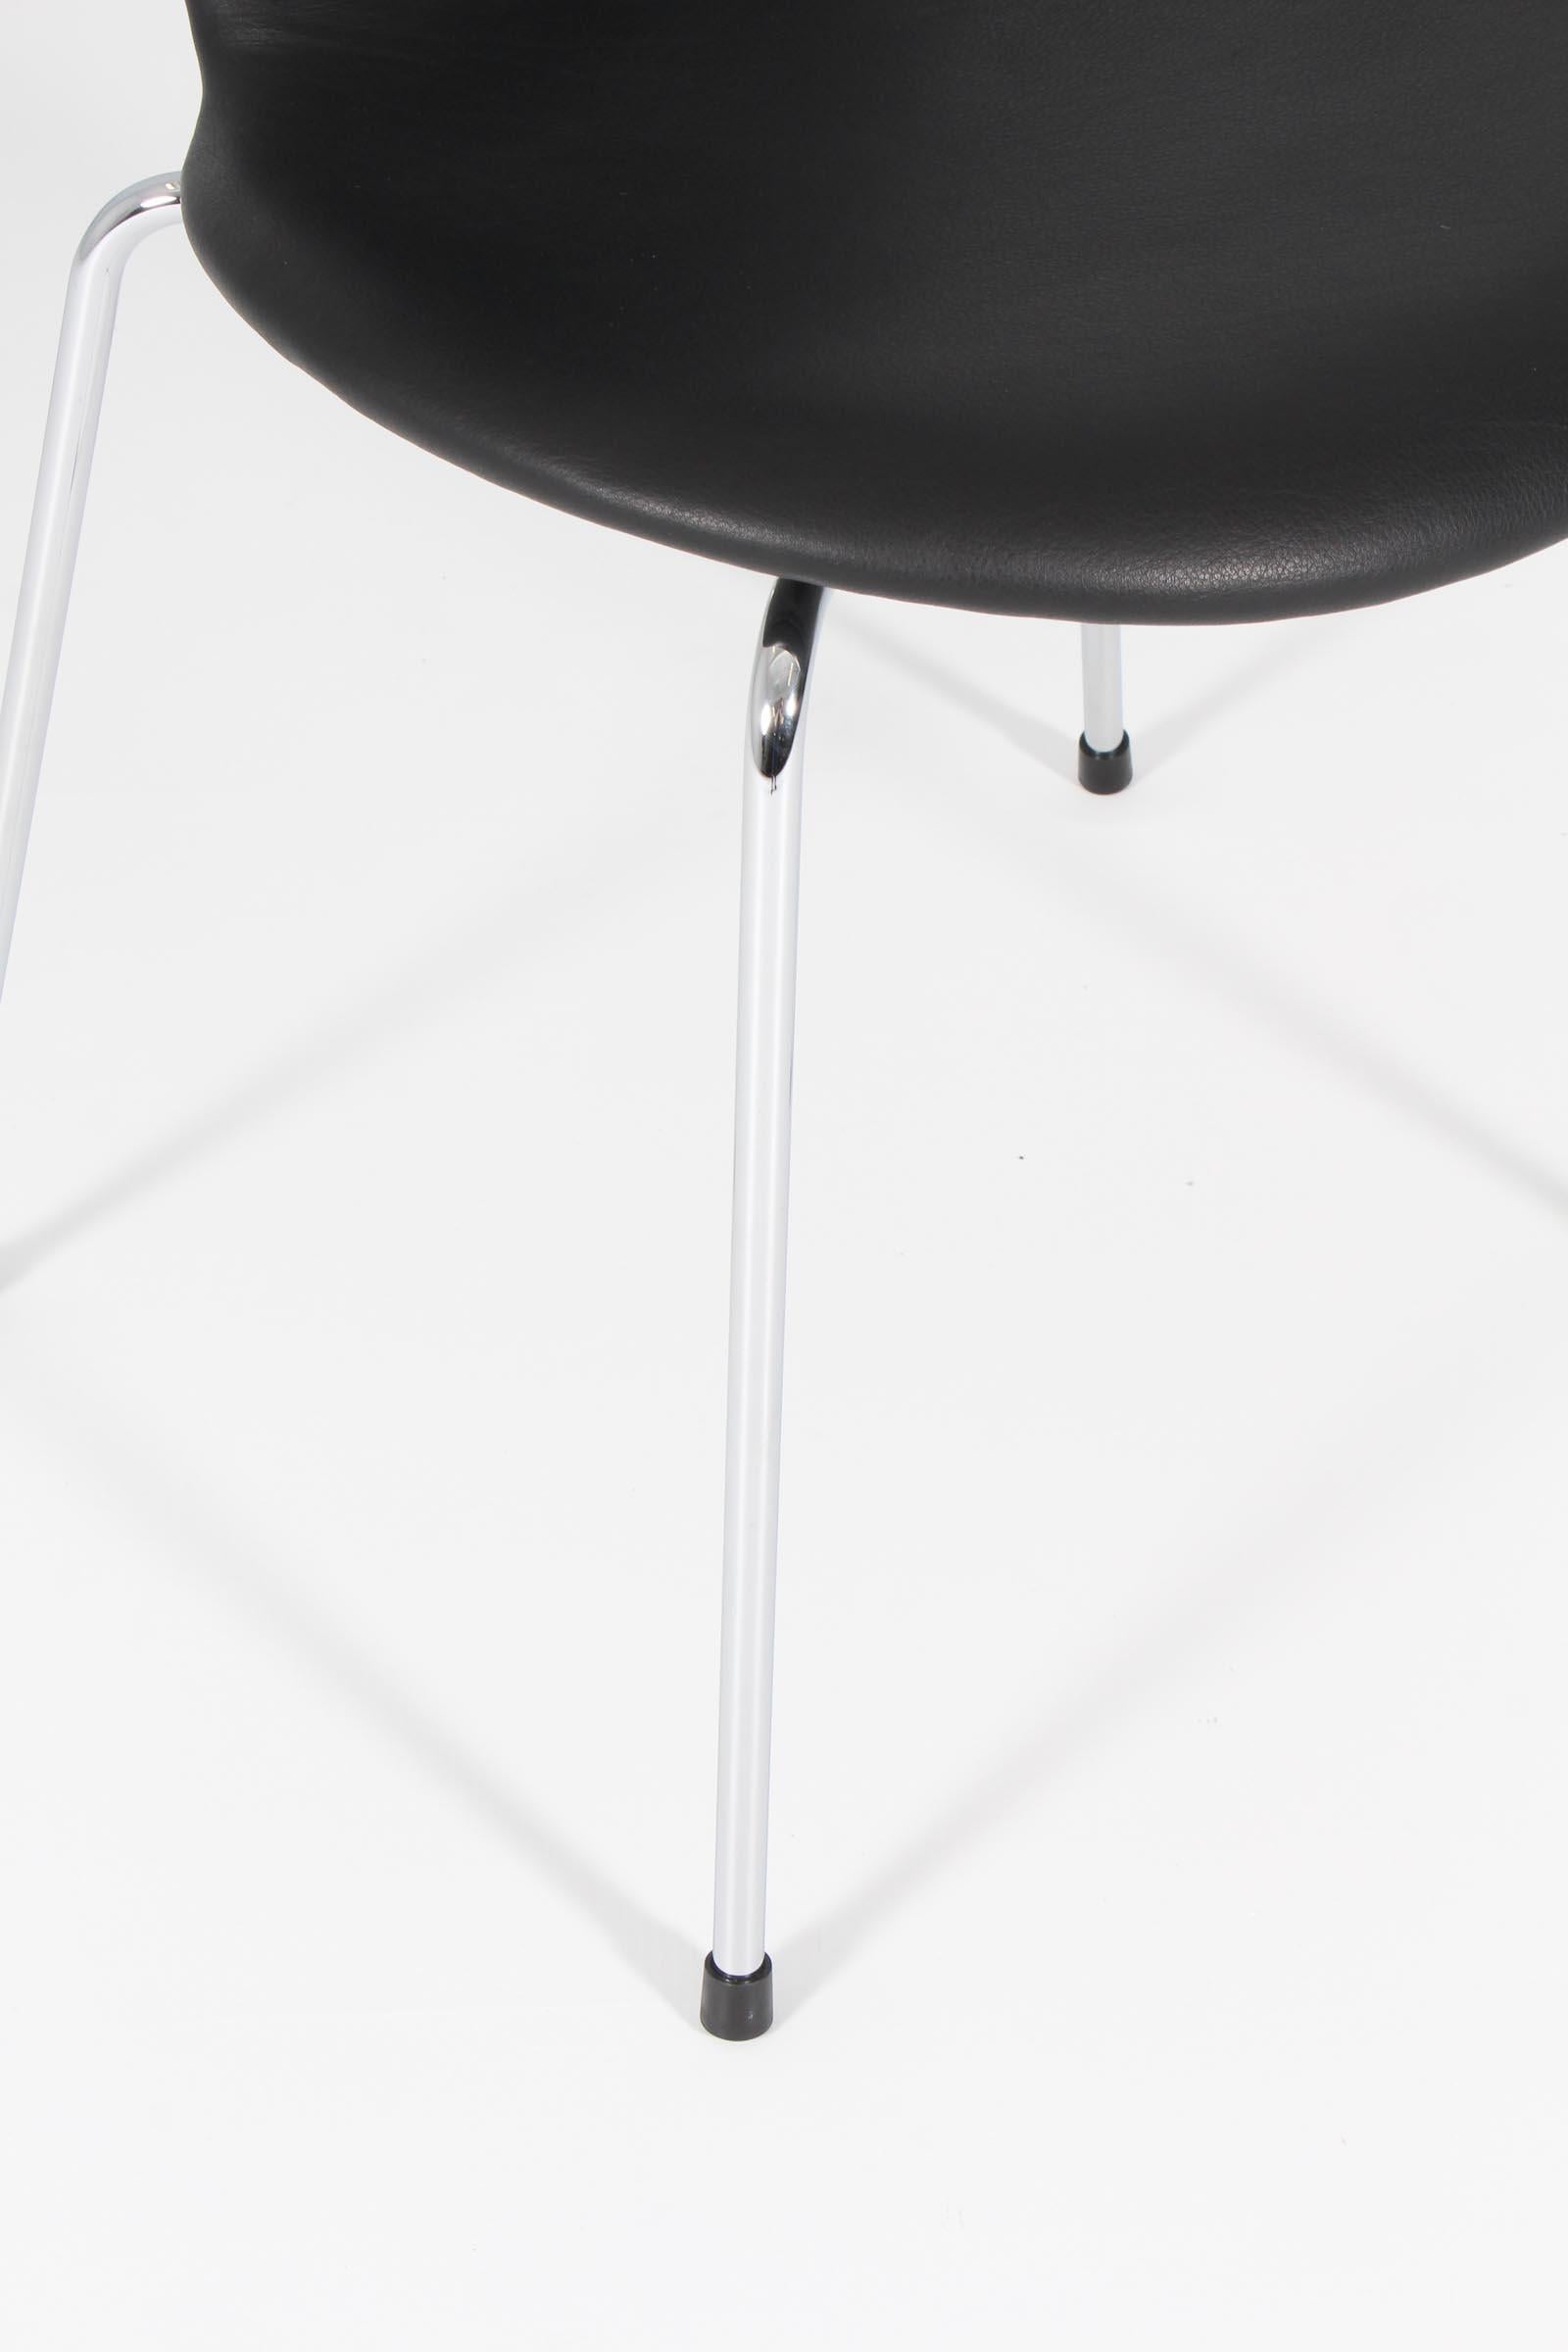 Arne Jacobsen, Dining Chair Model 3101 